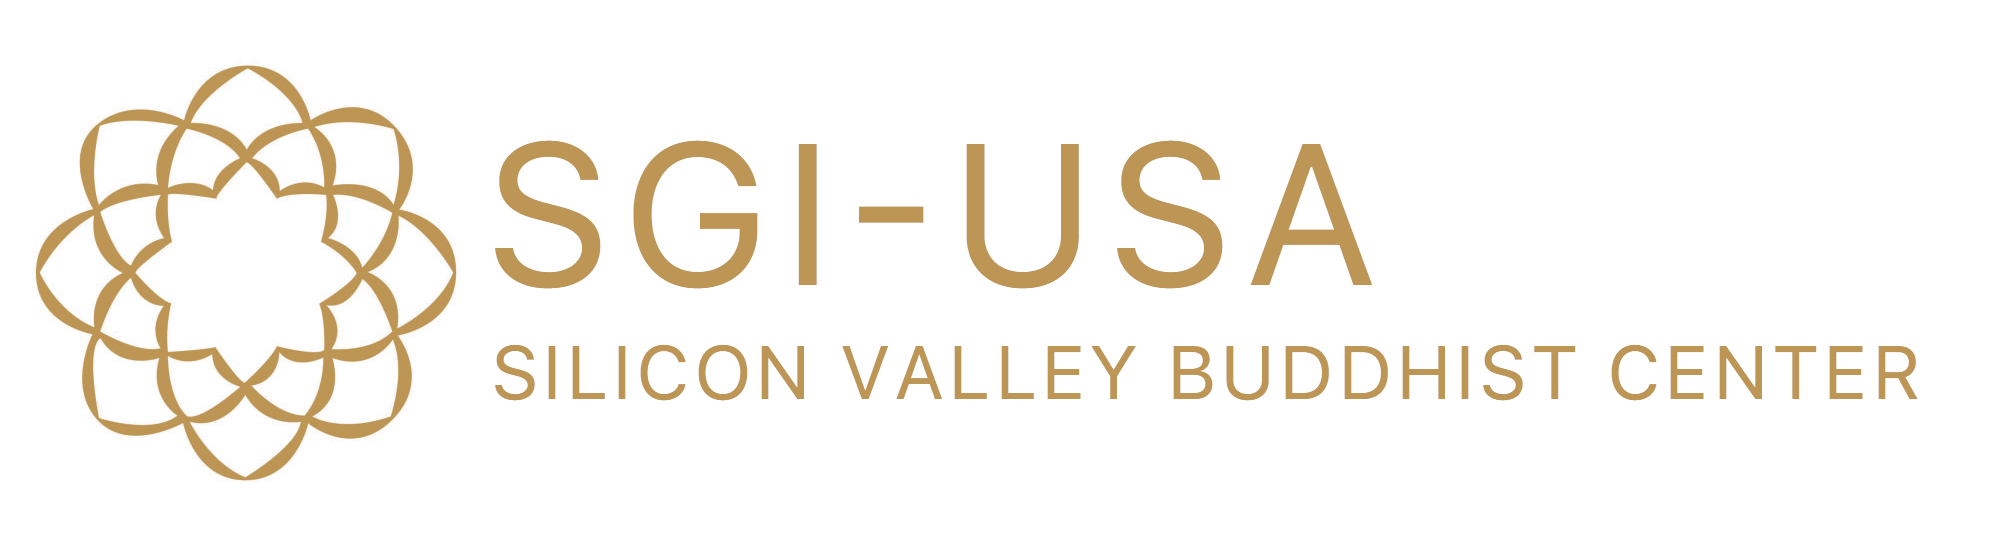 SGI-USA Silicon Valley Buddhist Center